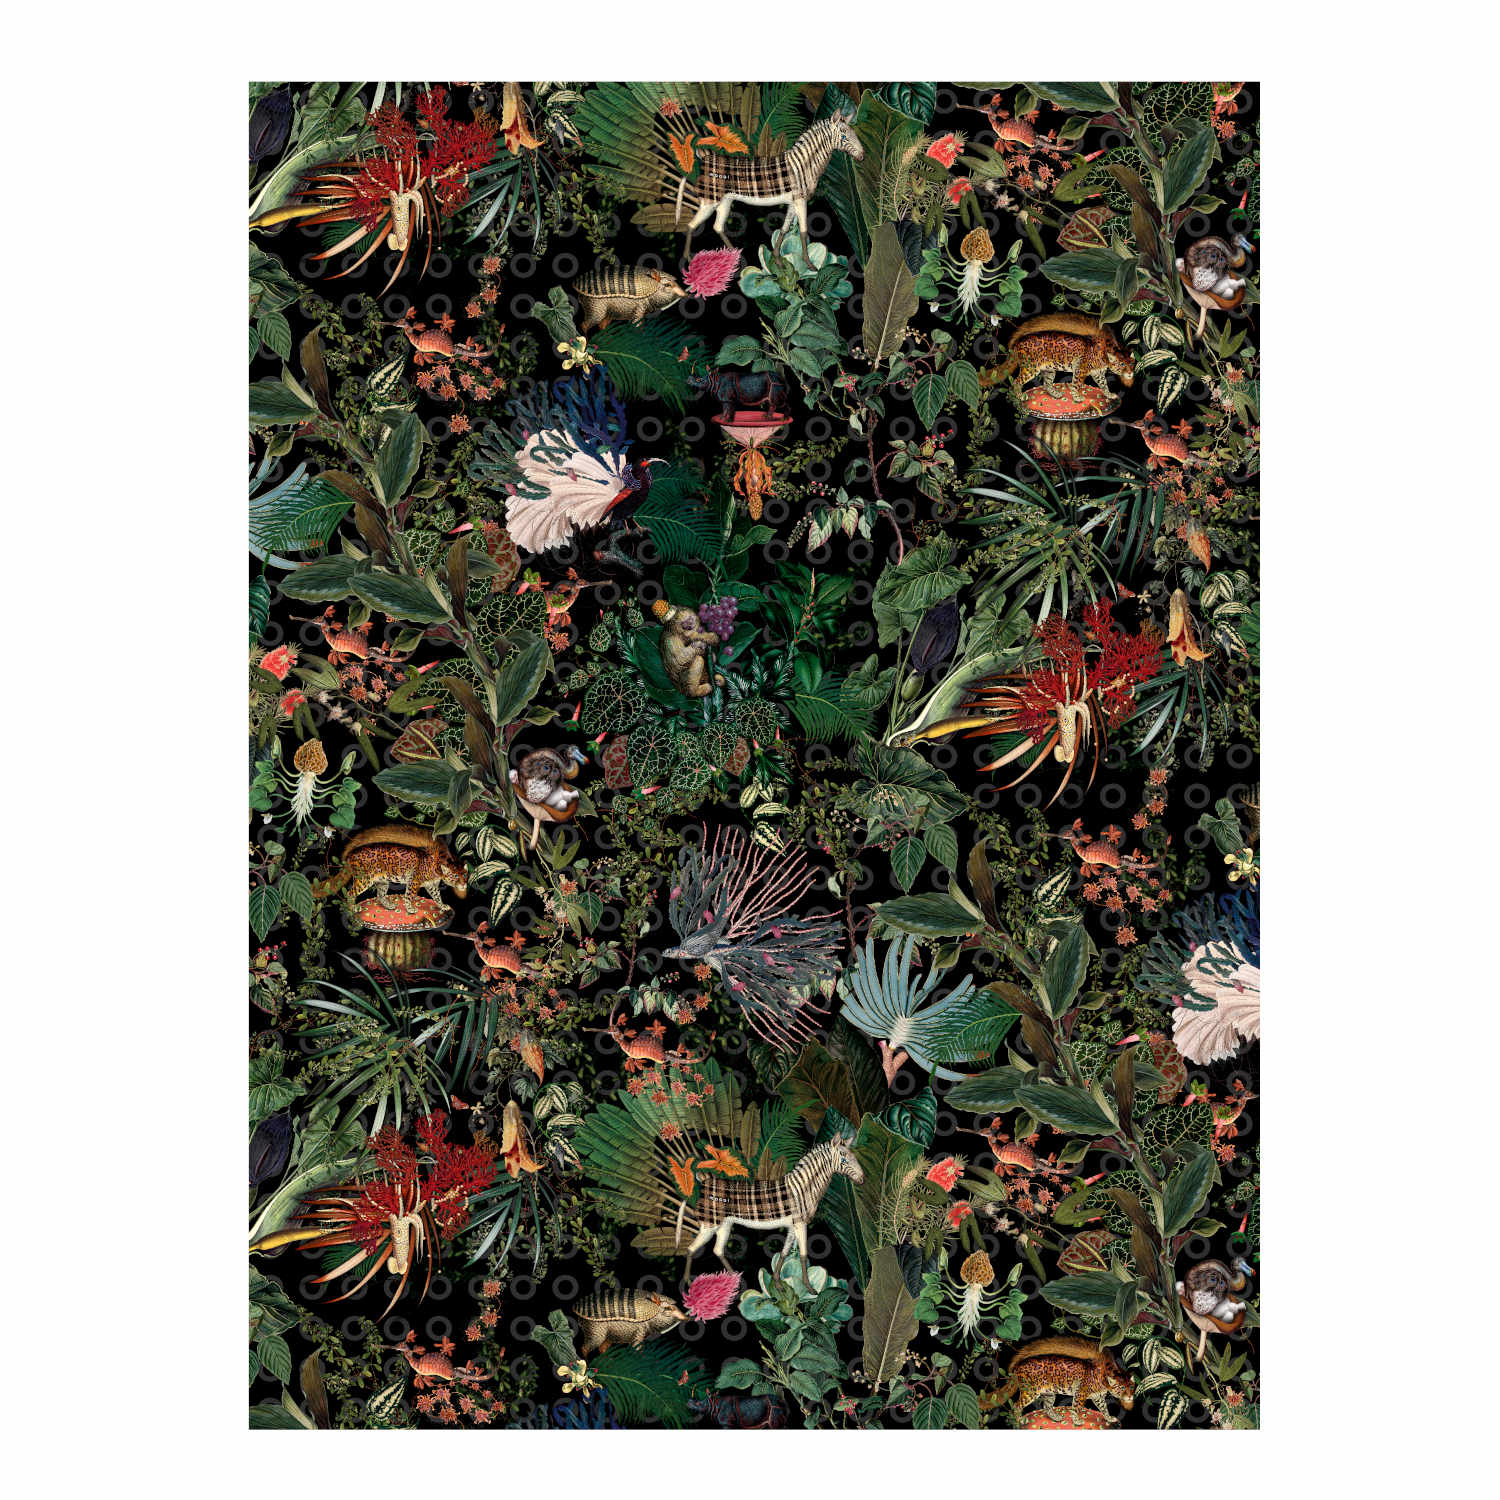 Menagerie of Extinct Animals Teppich, Farbe raven, Grösse 300 x 400 cm von Moooi Carpets